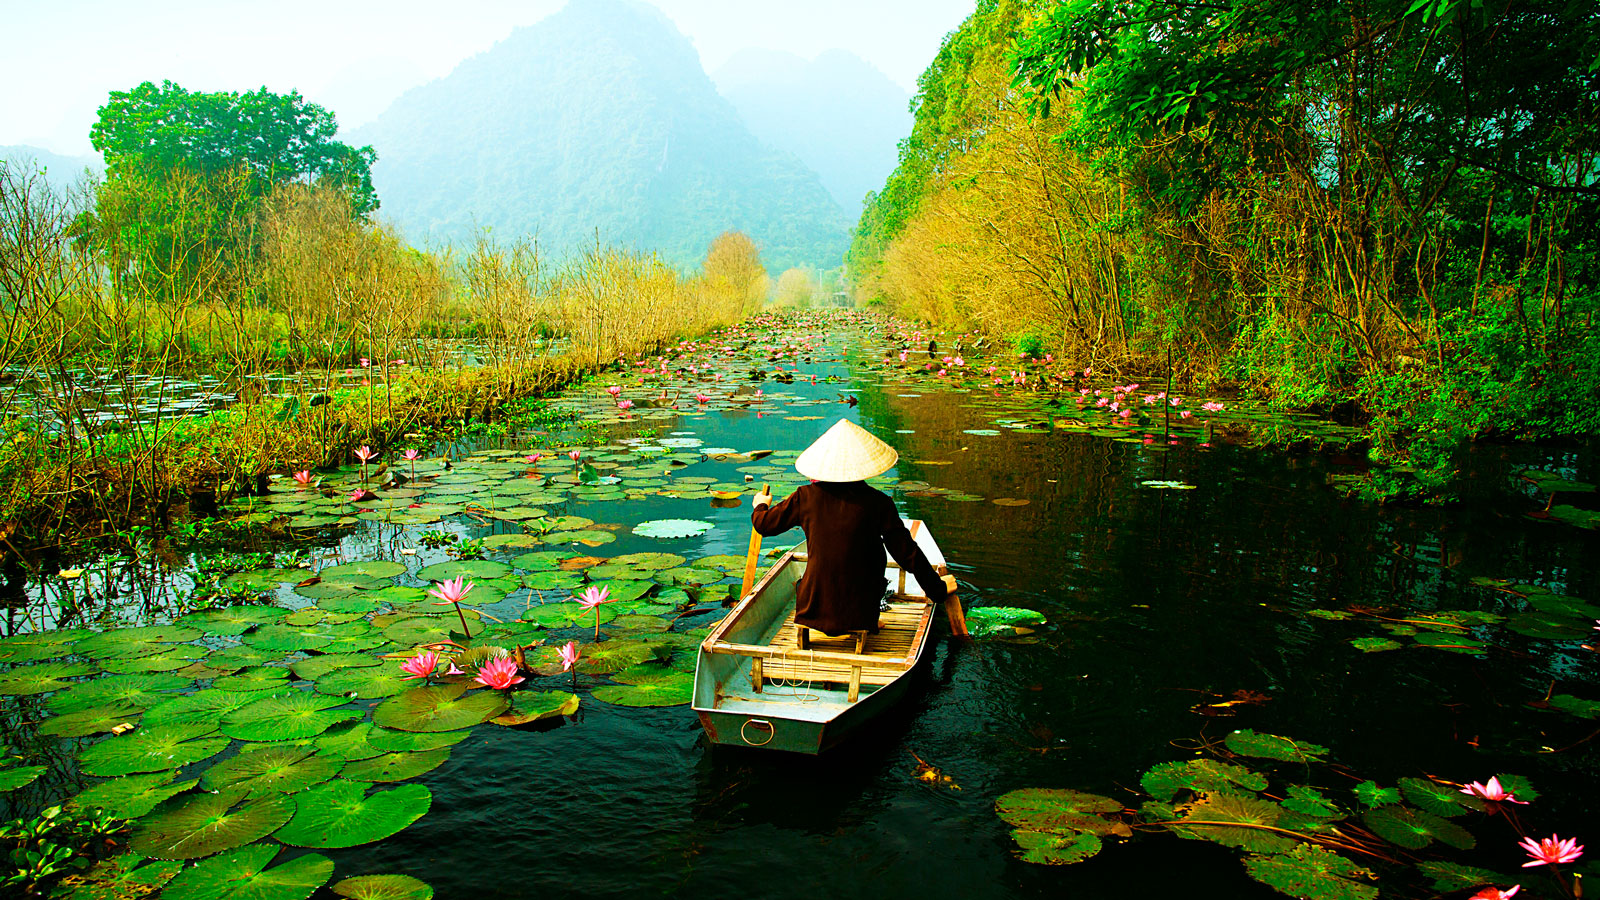 A Visit to Van Long Nature Reserve - A Hidden Gem of Vietnam